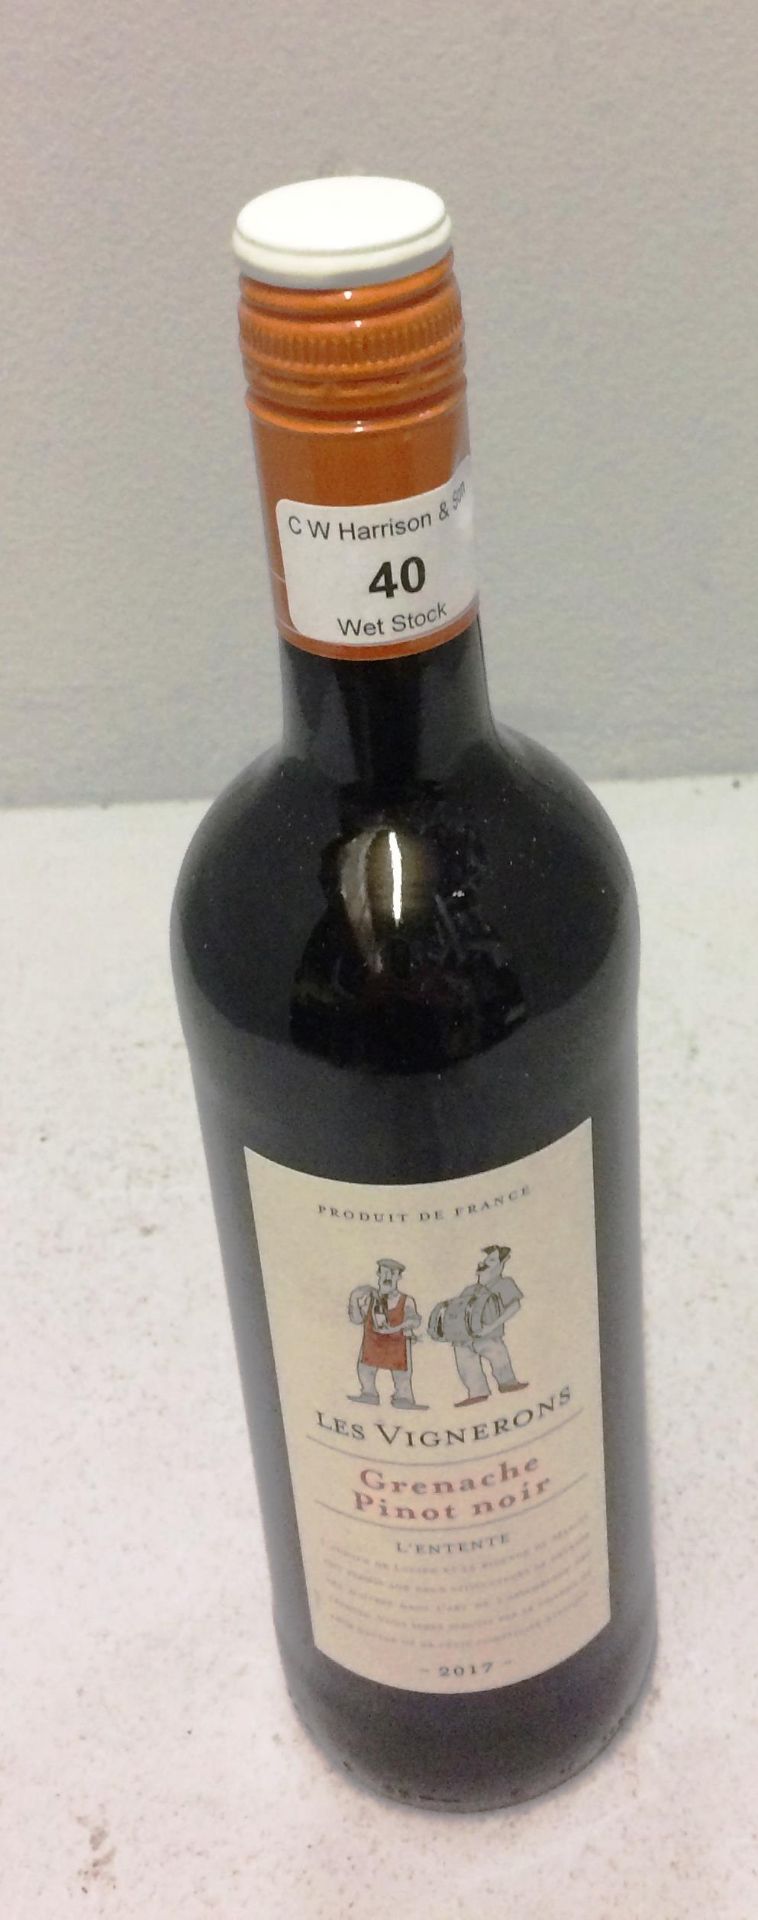 5 x 75cl bottles of Les Vignerons Grenache Pinot Noir 2017 wine